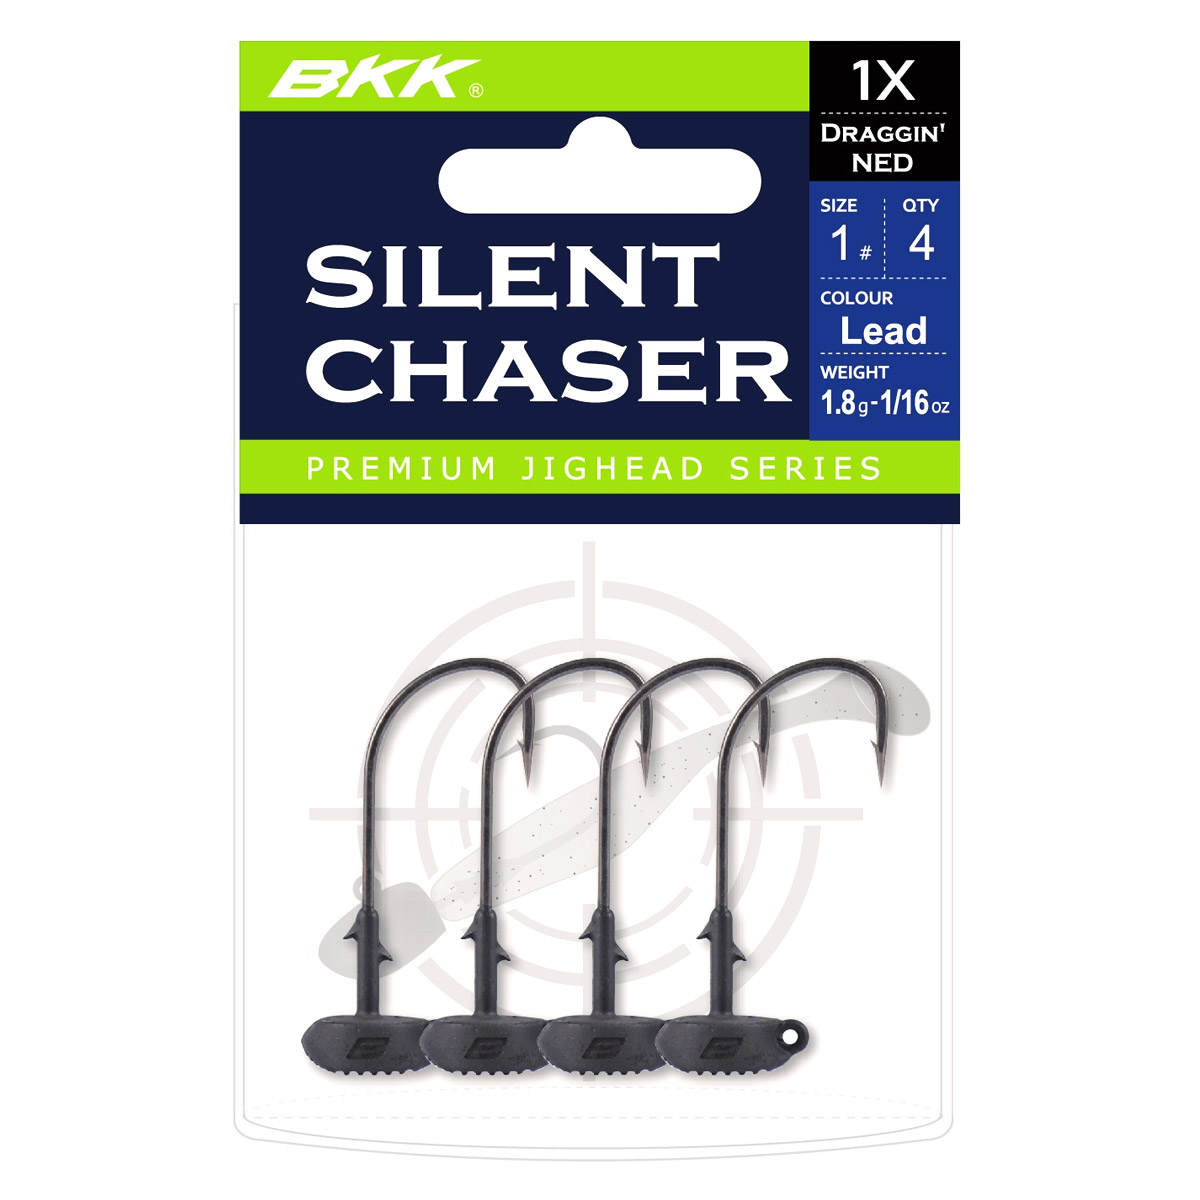 BKK Silent Chaser Draggin' Ned Black Size 1